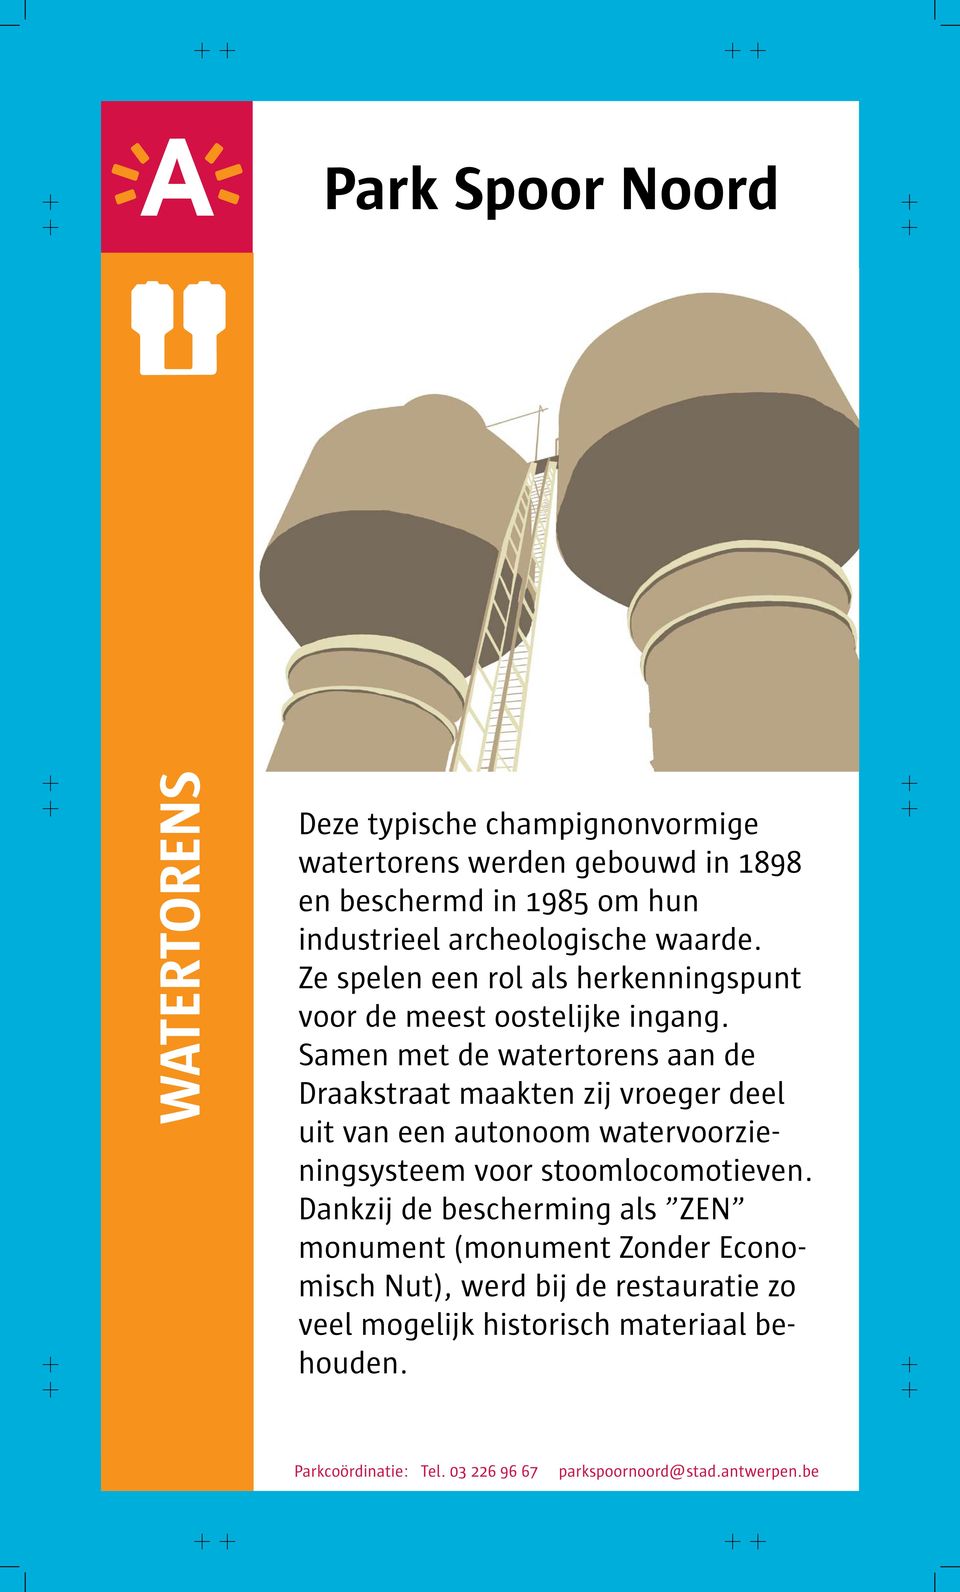 Samen met de watertorens aan de Draakstraat maakten zij vroeger deel uit van een autonoom watervoorzieningsysteem voor stoomlocomotieven.